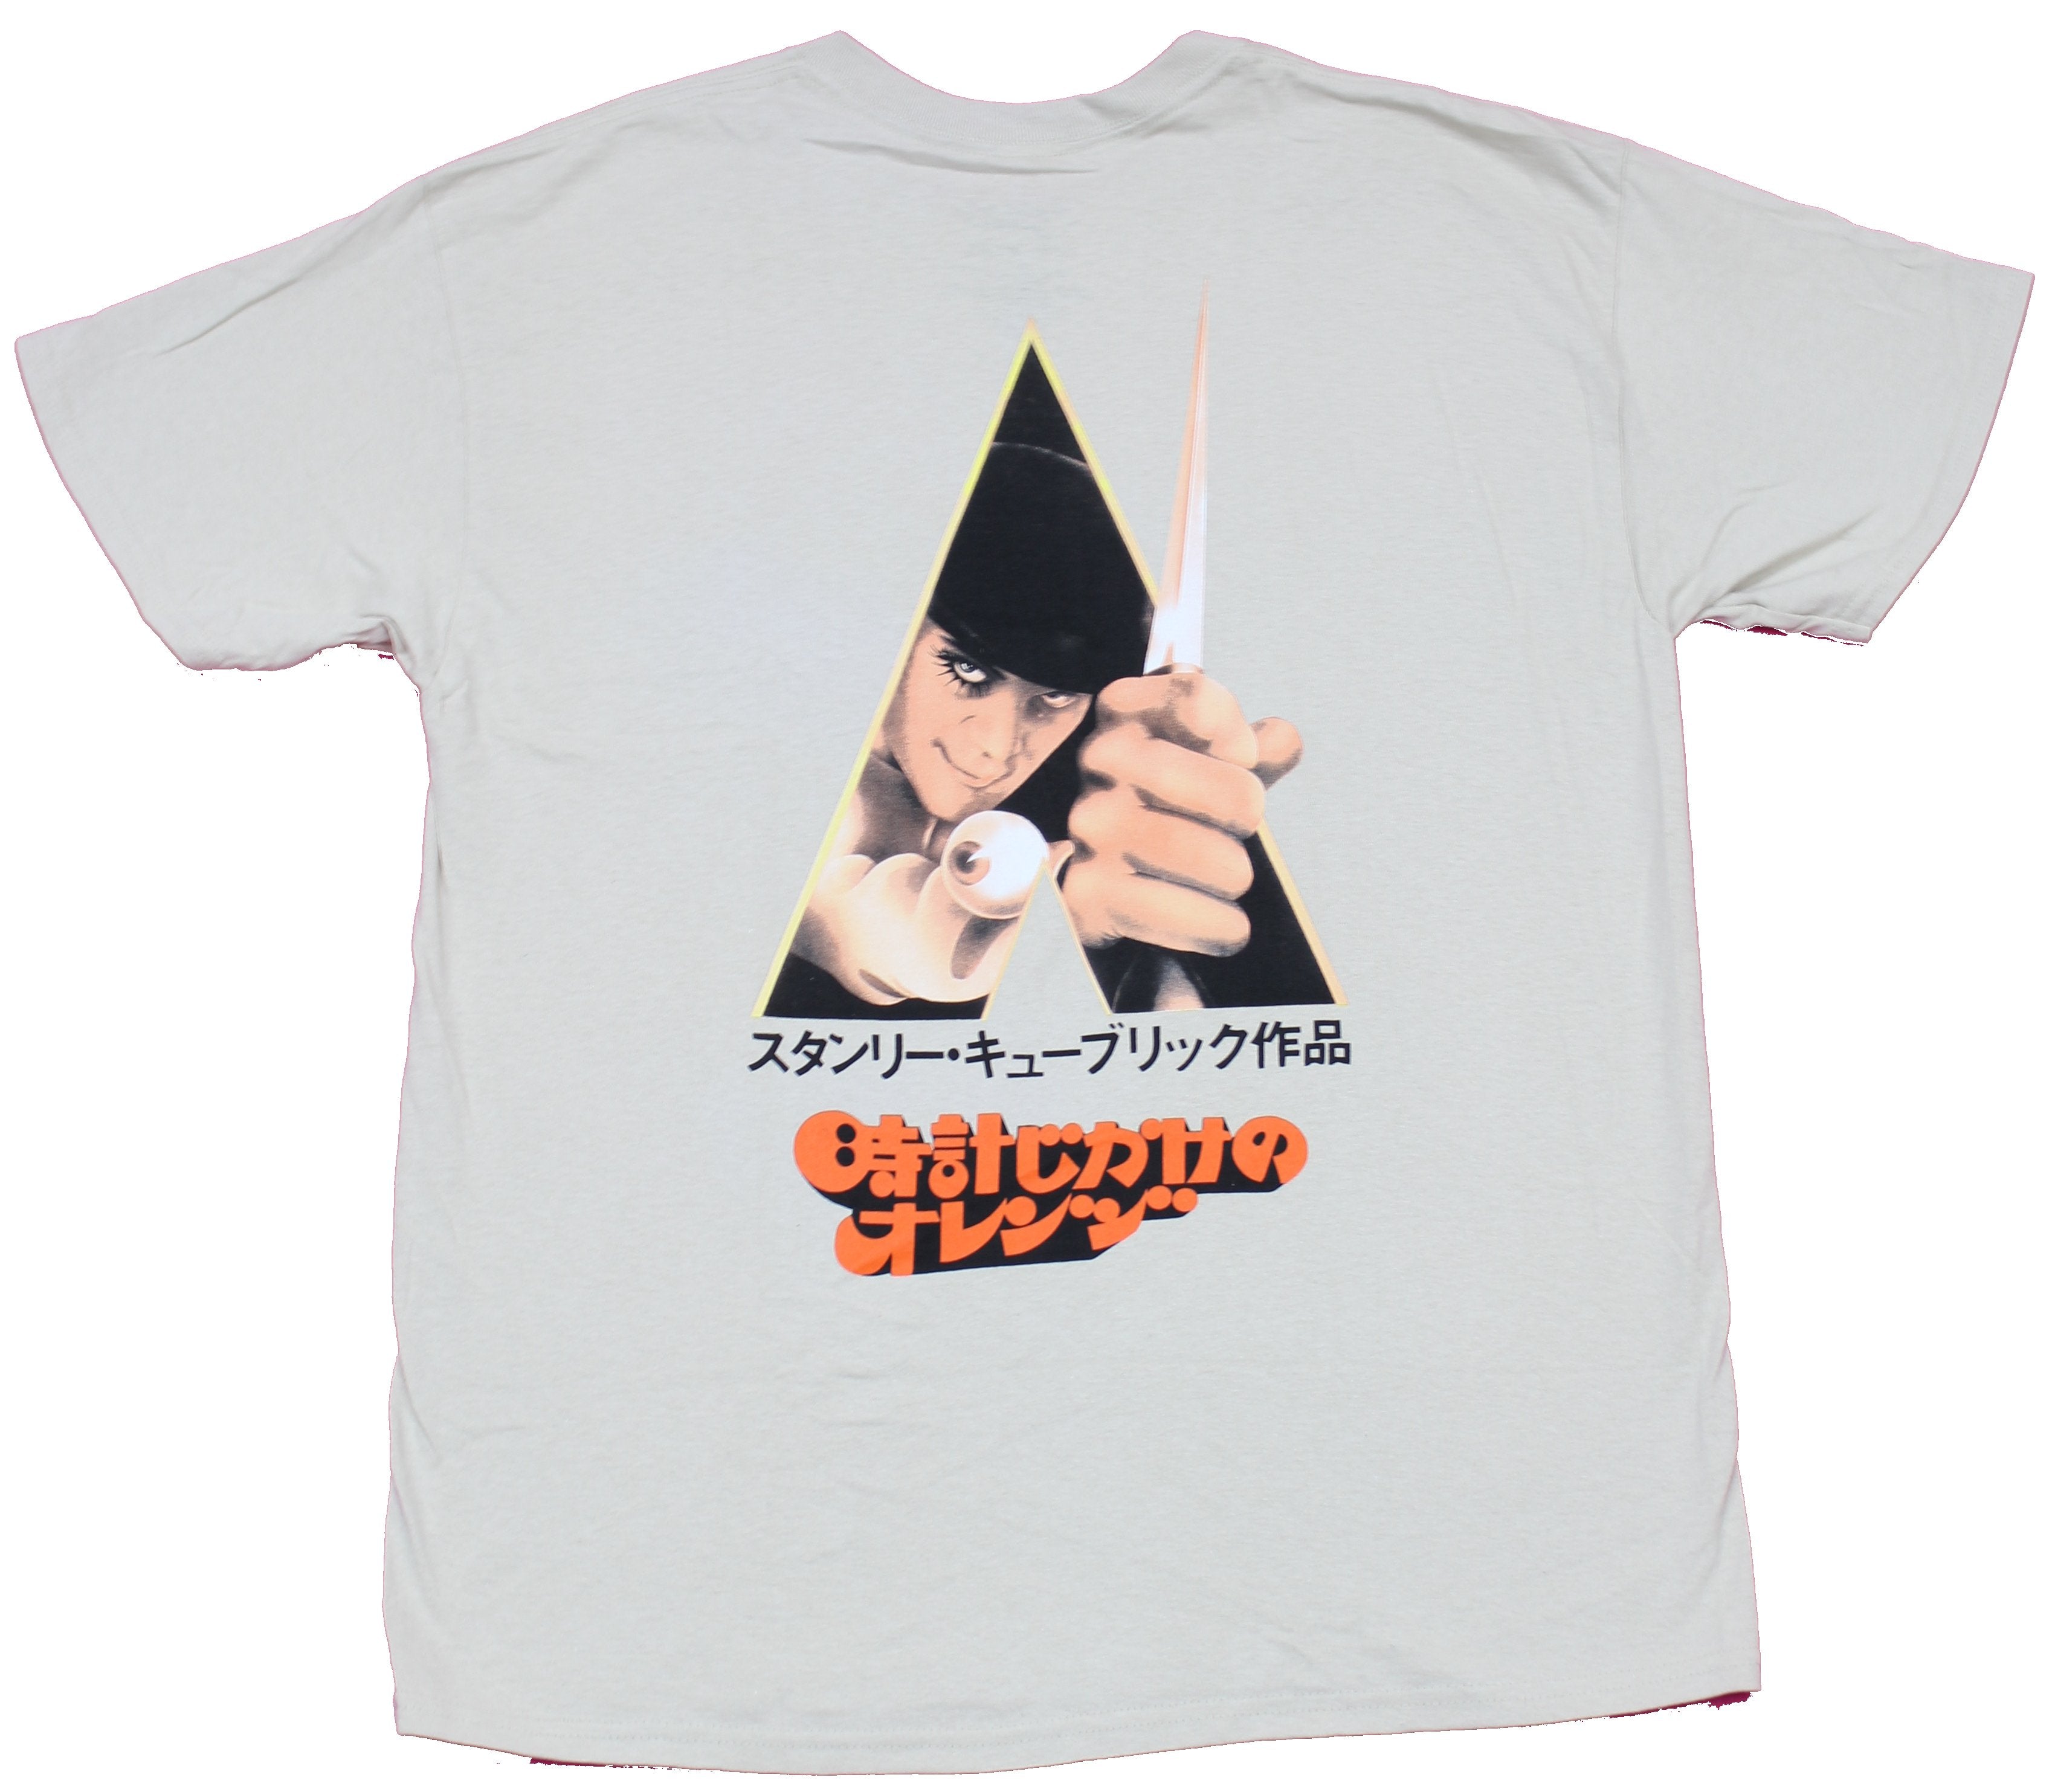 A Clockwork Orange Mens T-Shirt - Word Logo Front & Kanji Poster Back